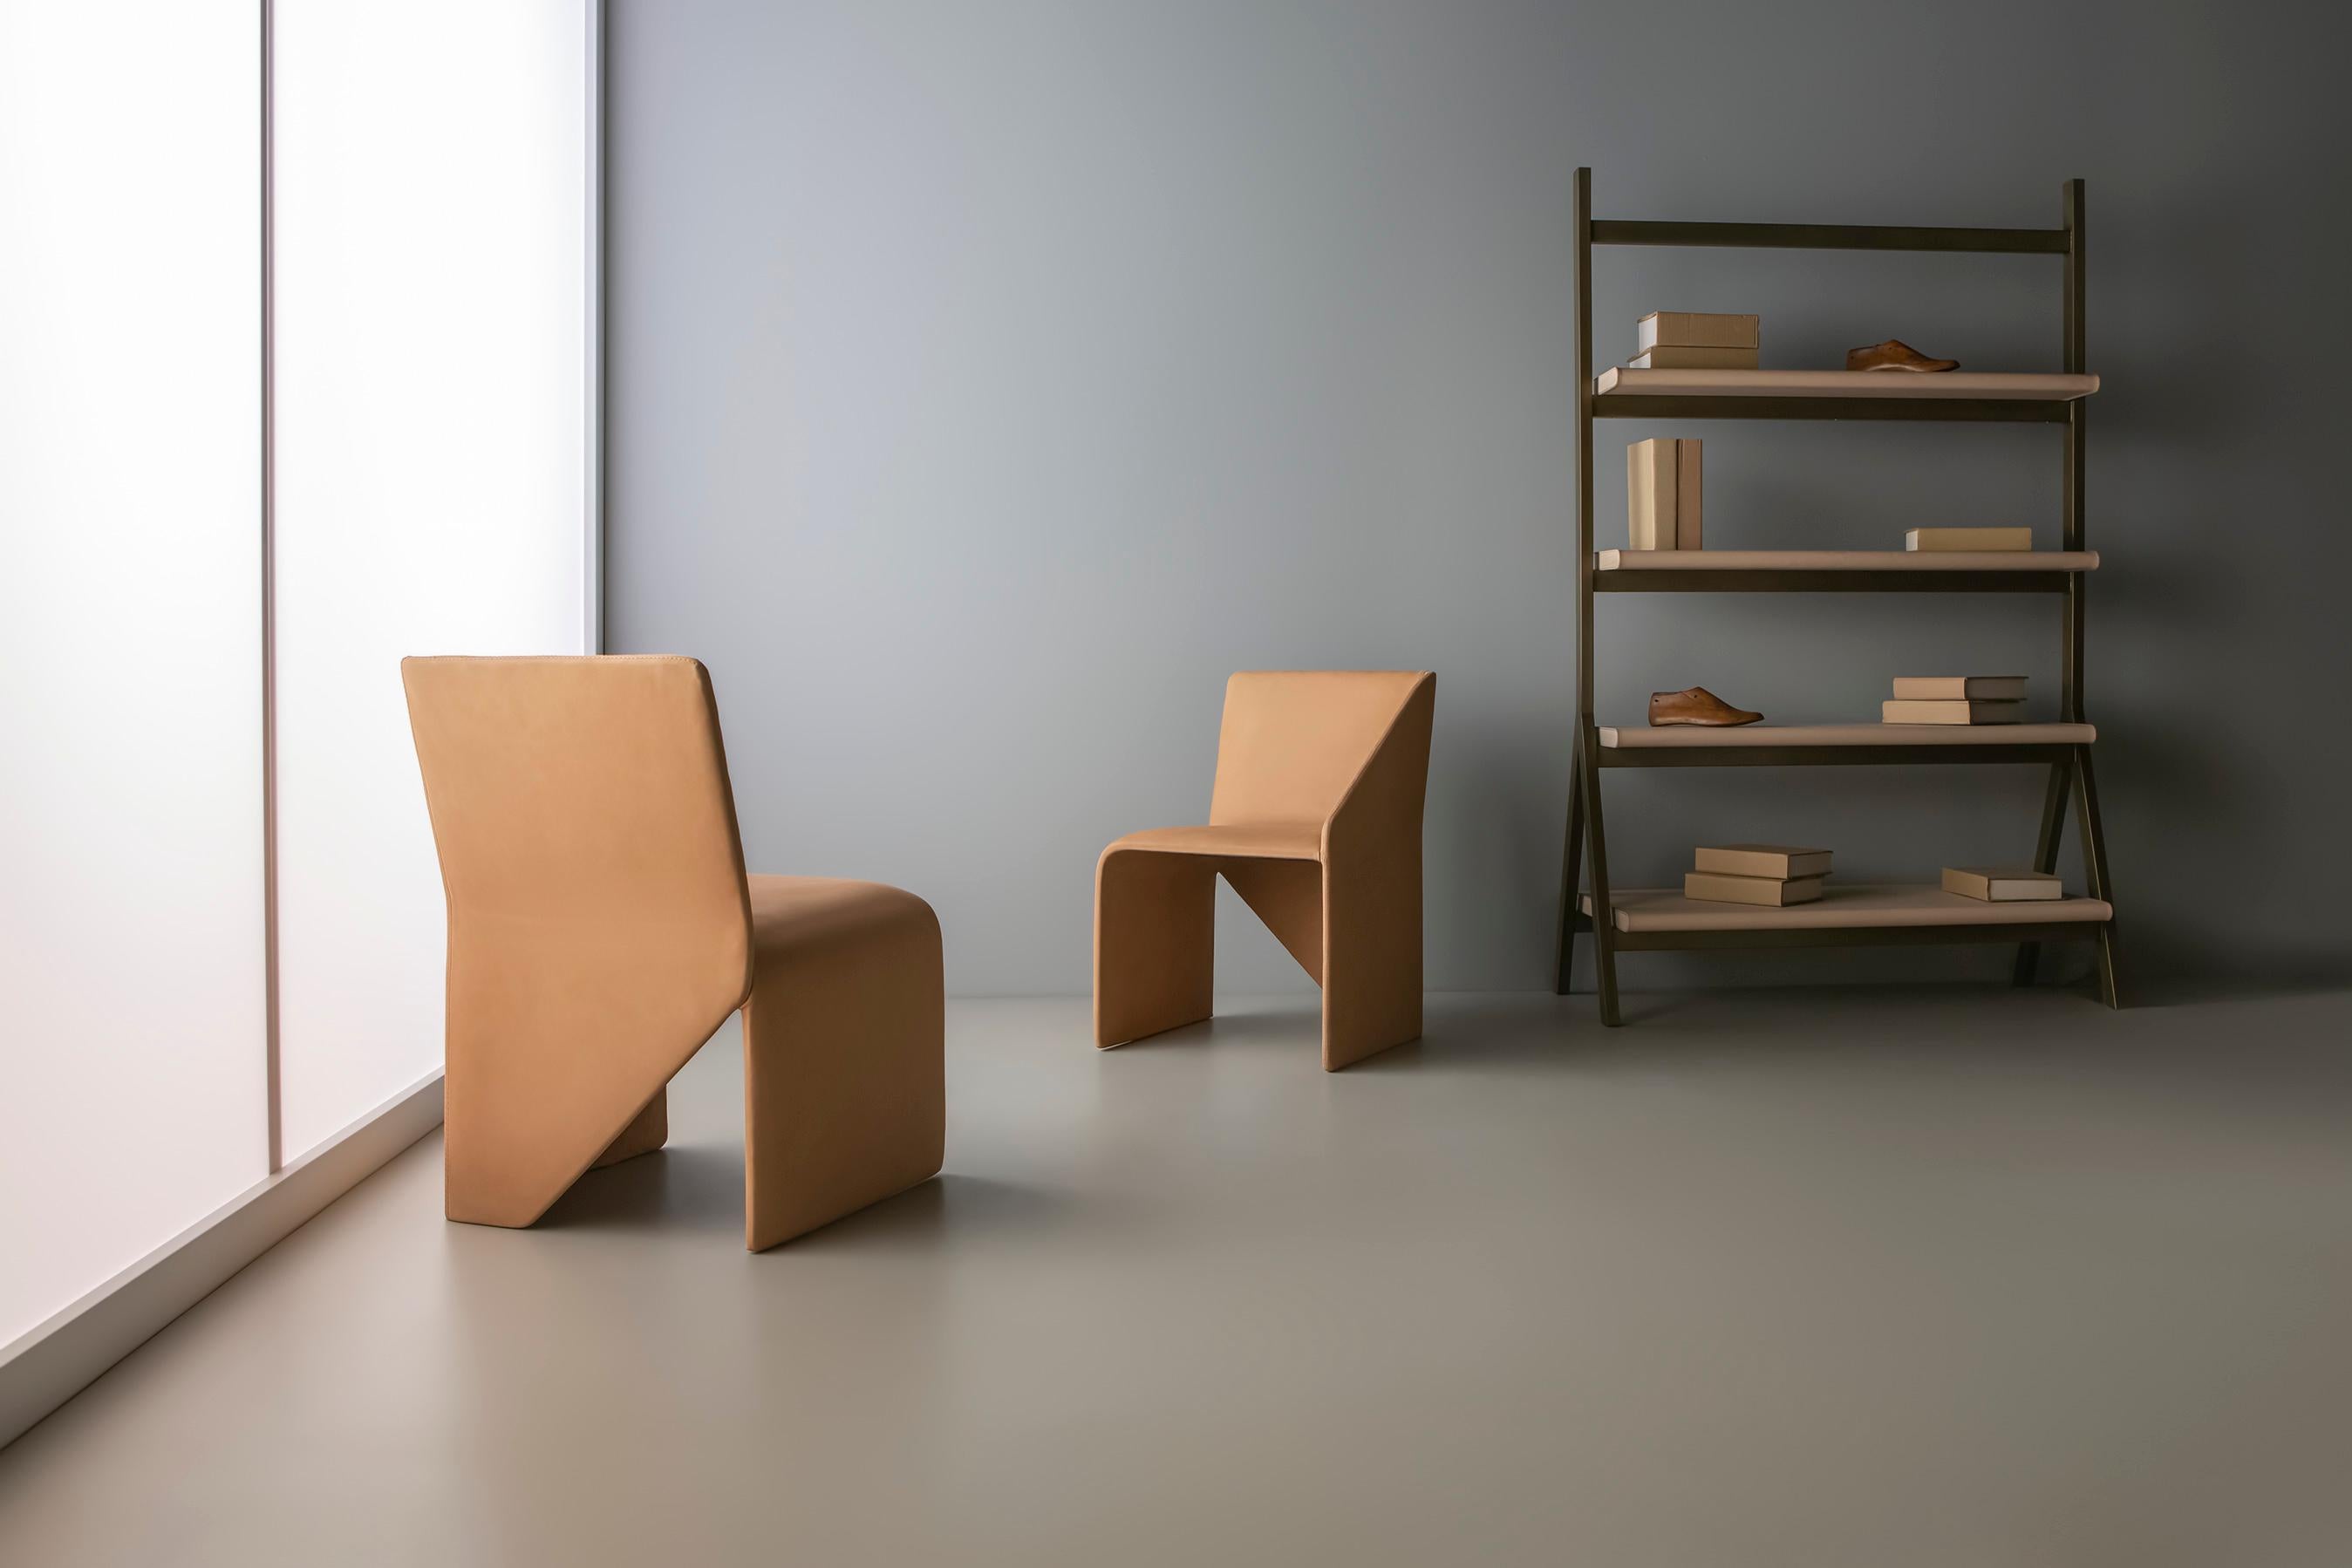 Bauhaus-Stuhl von Doimo Brasil
Abmessungen: B 51 x T 58 x H 76 cm 
MATERIALIEN: Stuhl aus Metall und Fiberglas mit gepolstertem Sitz.


Mit der Absicht, guten Geschmack und Persönlichkeit zu vermitteln, entschlüsselt Doimo Trends und folgt der